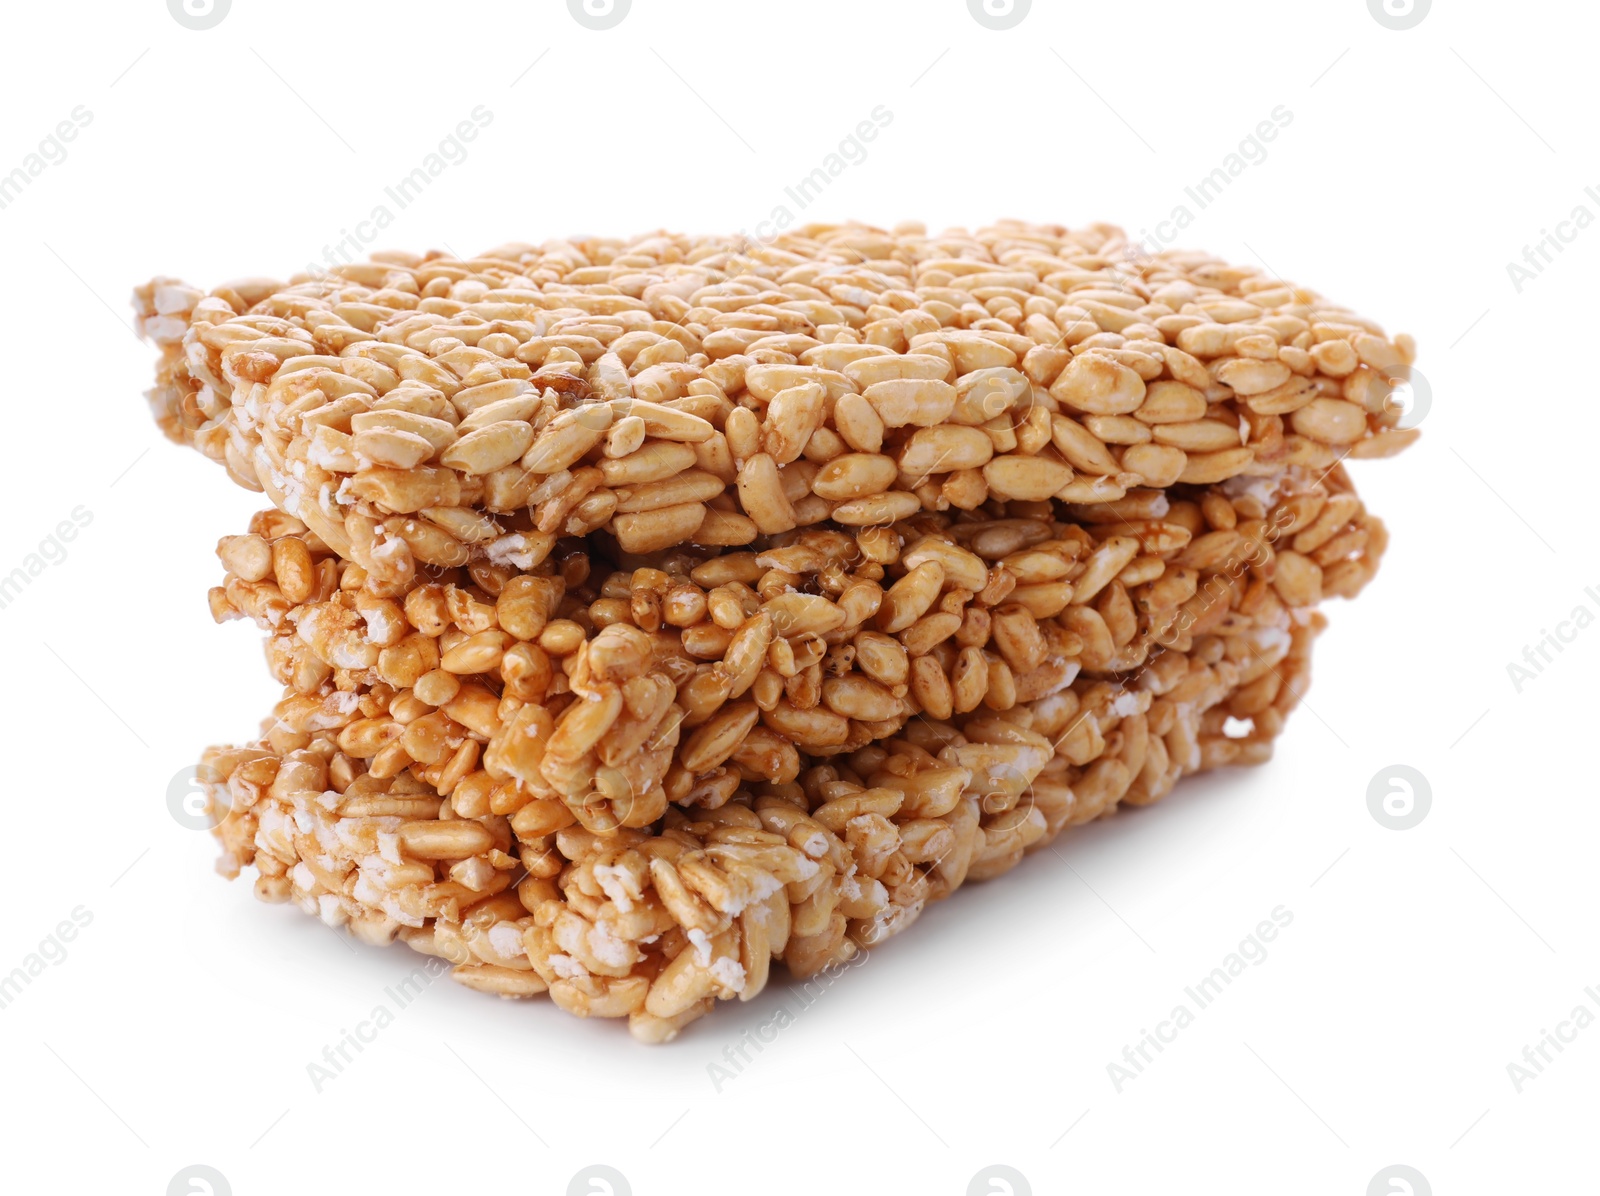 Photo of Puffed rice bars (kozinaki) on white background